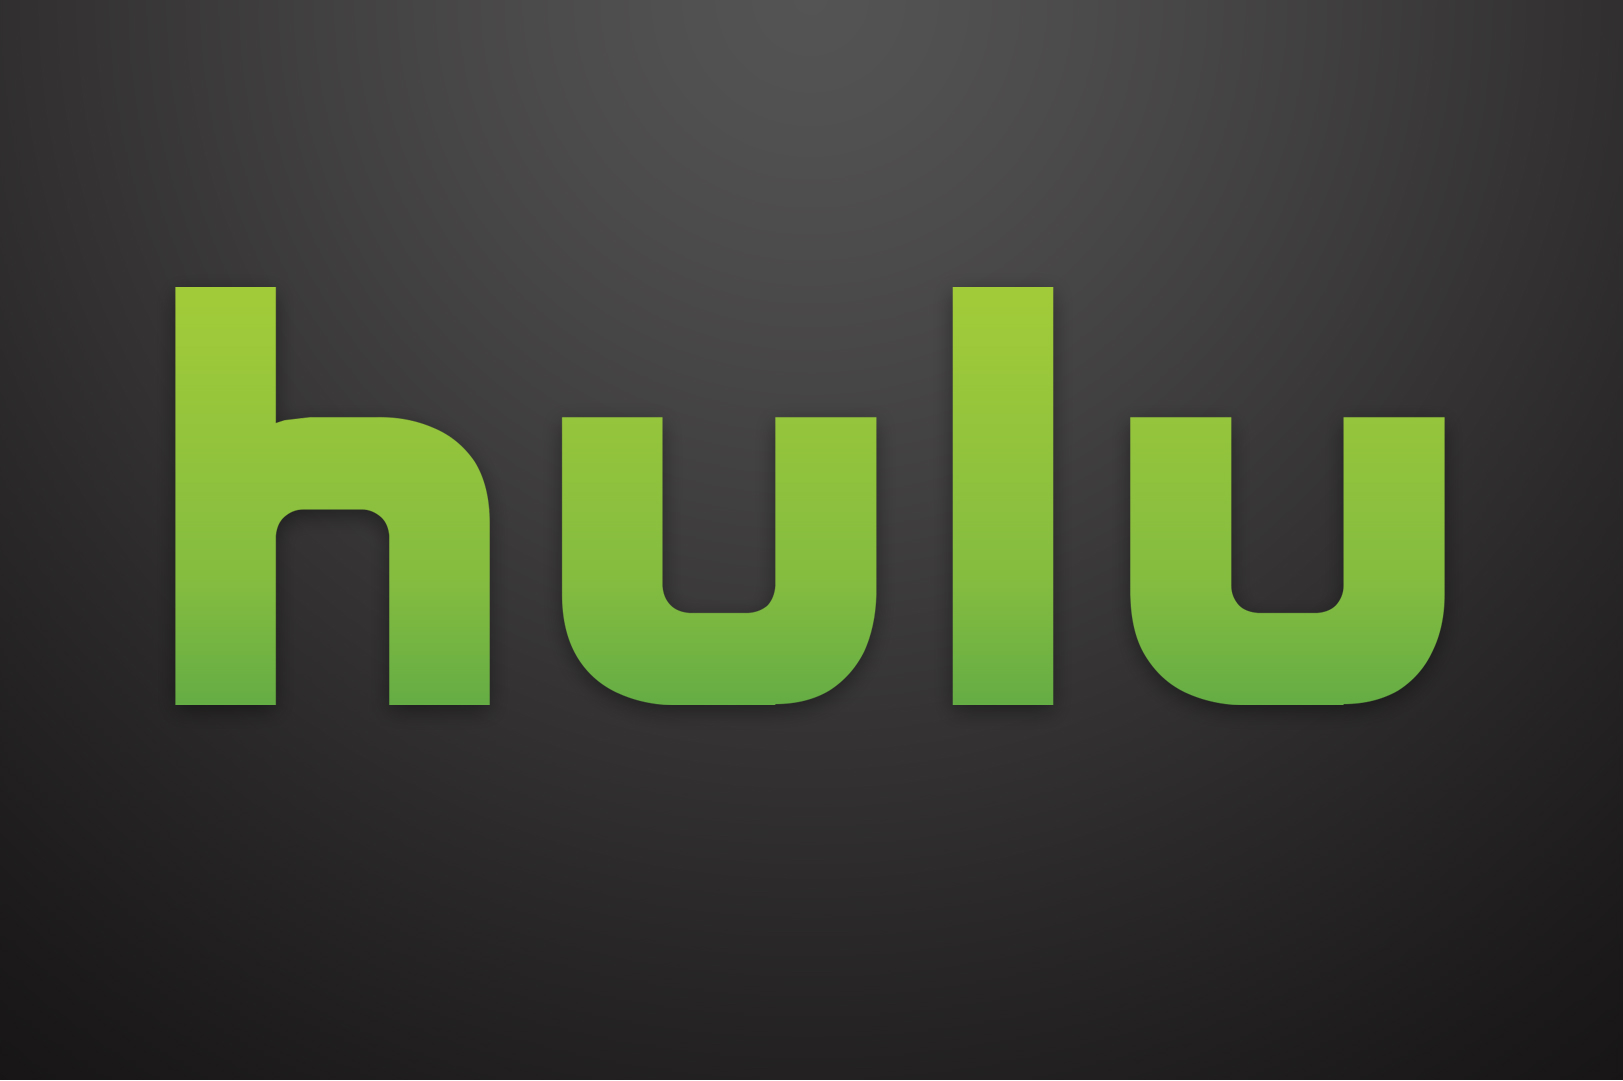 El logo de Hulu sobre un fondo gris.